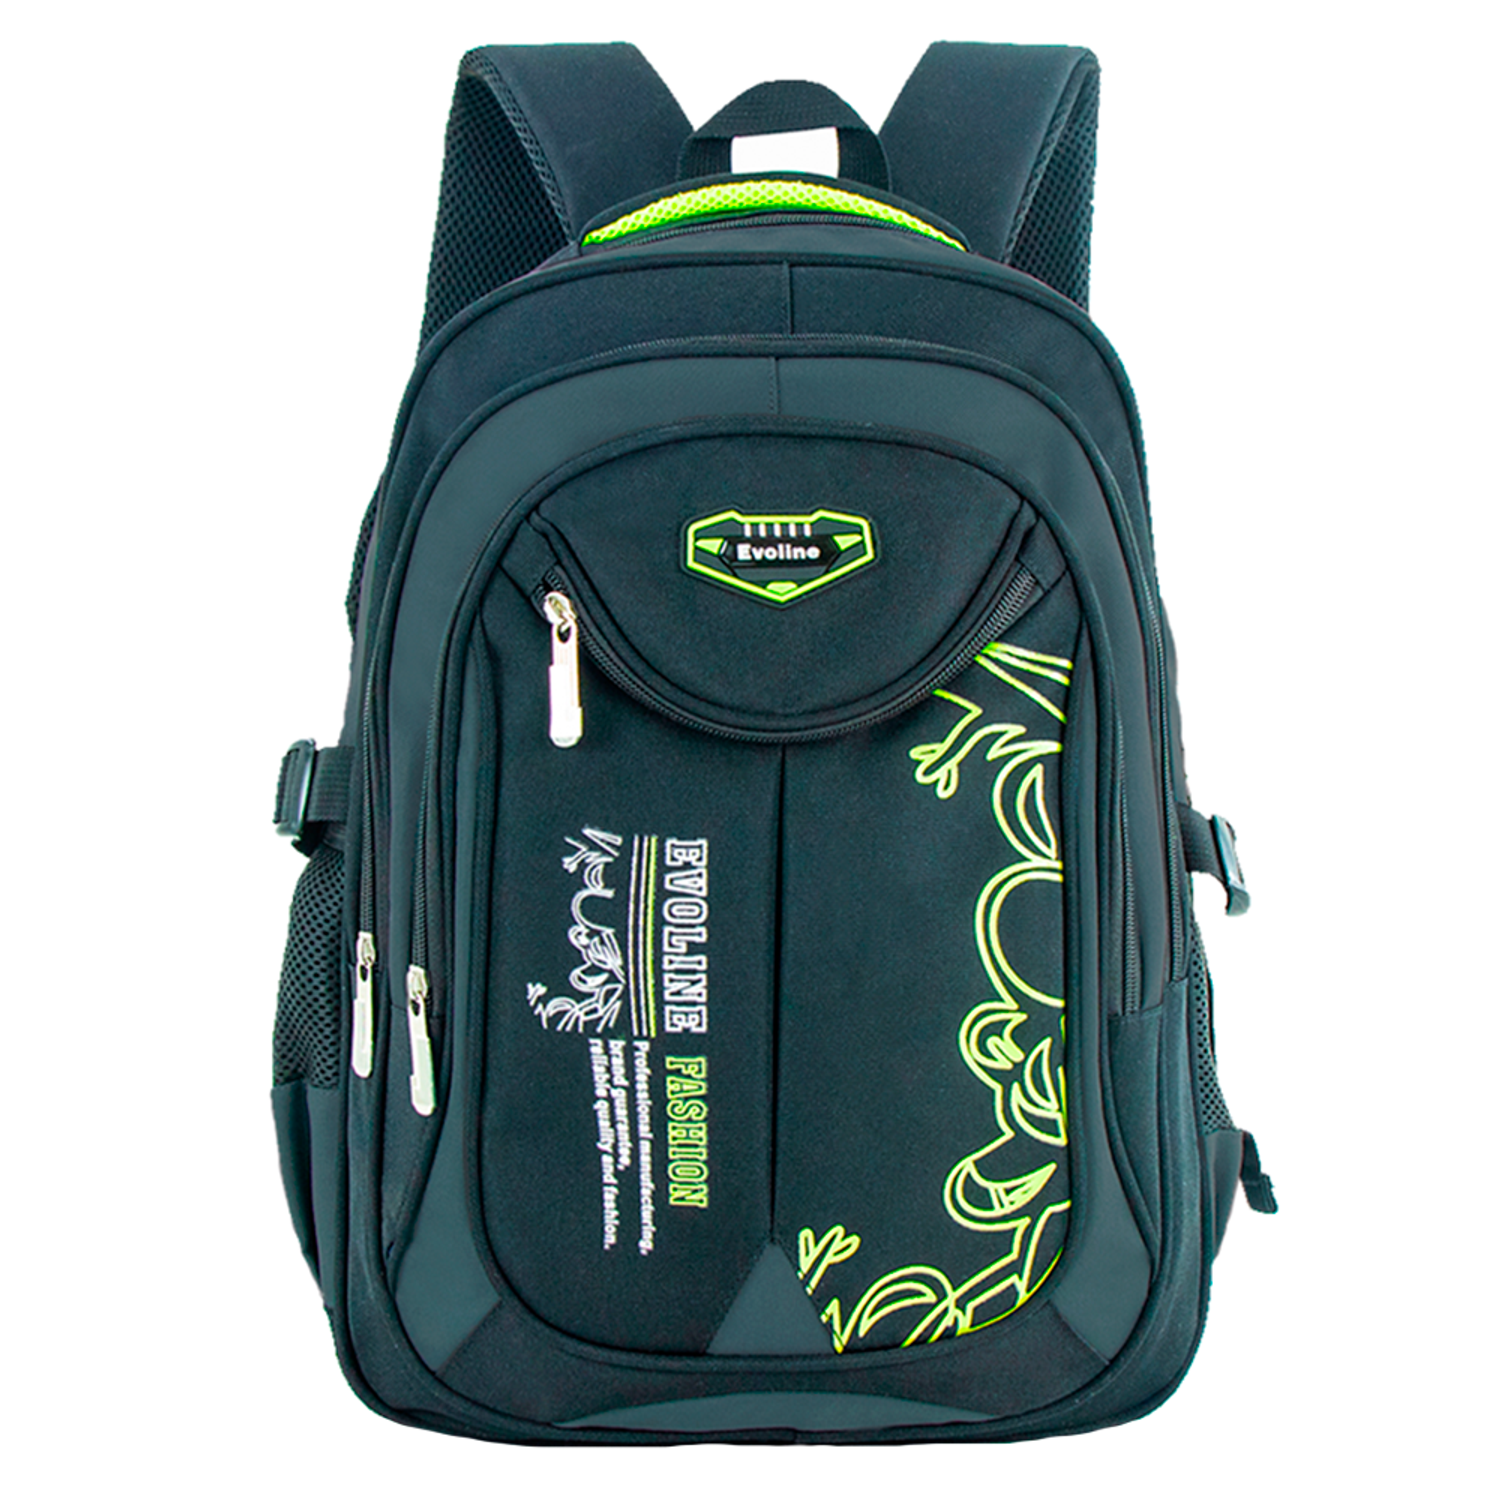 Рюкзак школьный Evoline Серый зеленый EVO-332-41 - фото 1